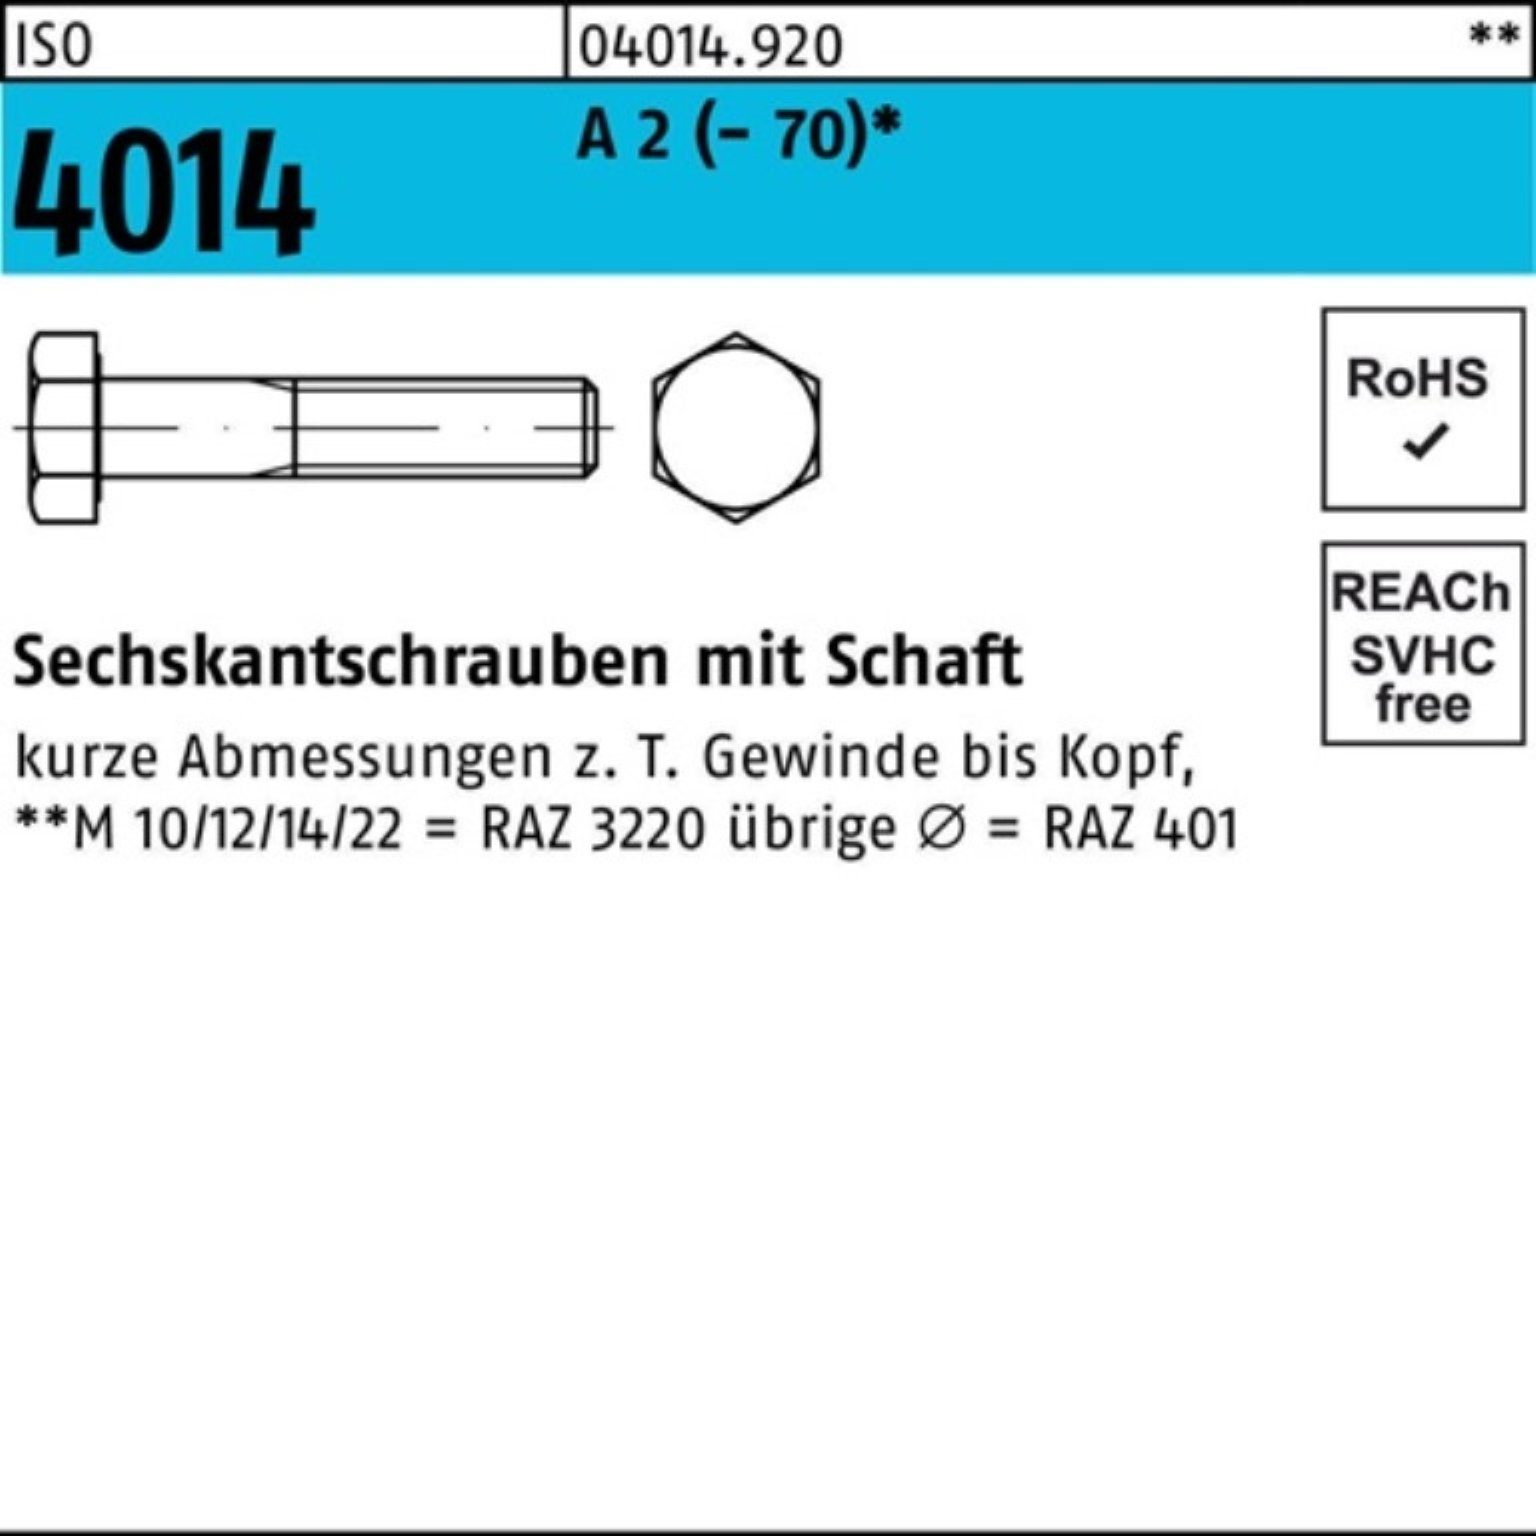 Bufab Sechskantschraube 100er Pack Sechskantschraube ISO 4014 Schaft M24x 95 A 2 (70) 1 Stü